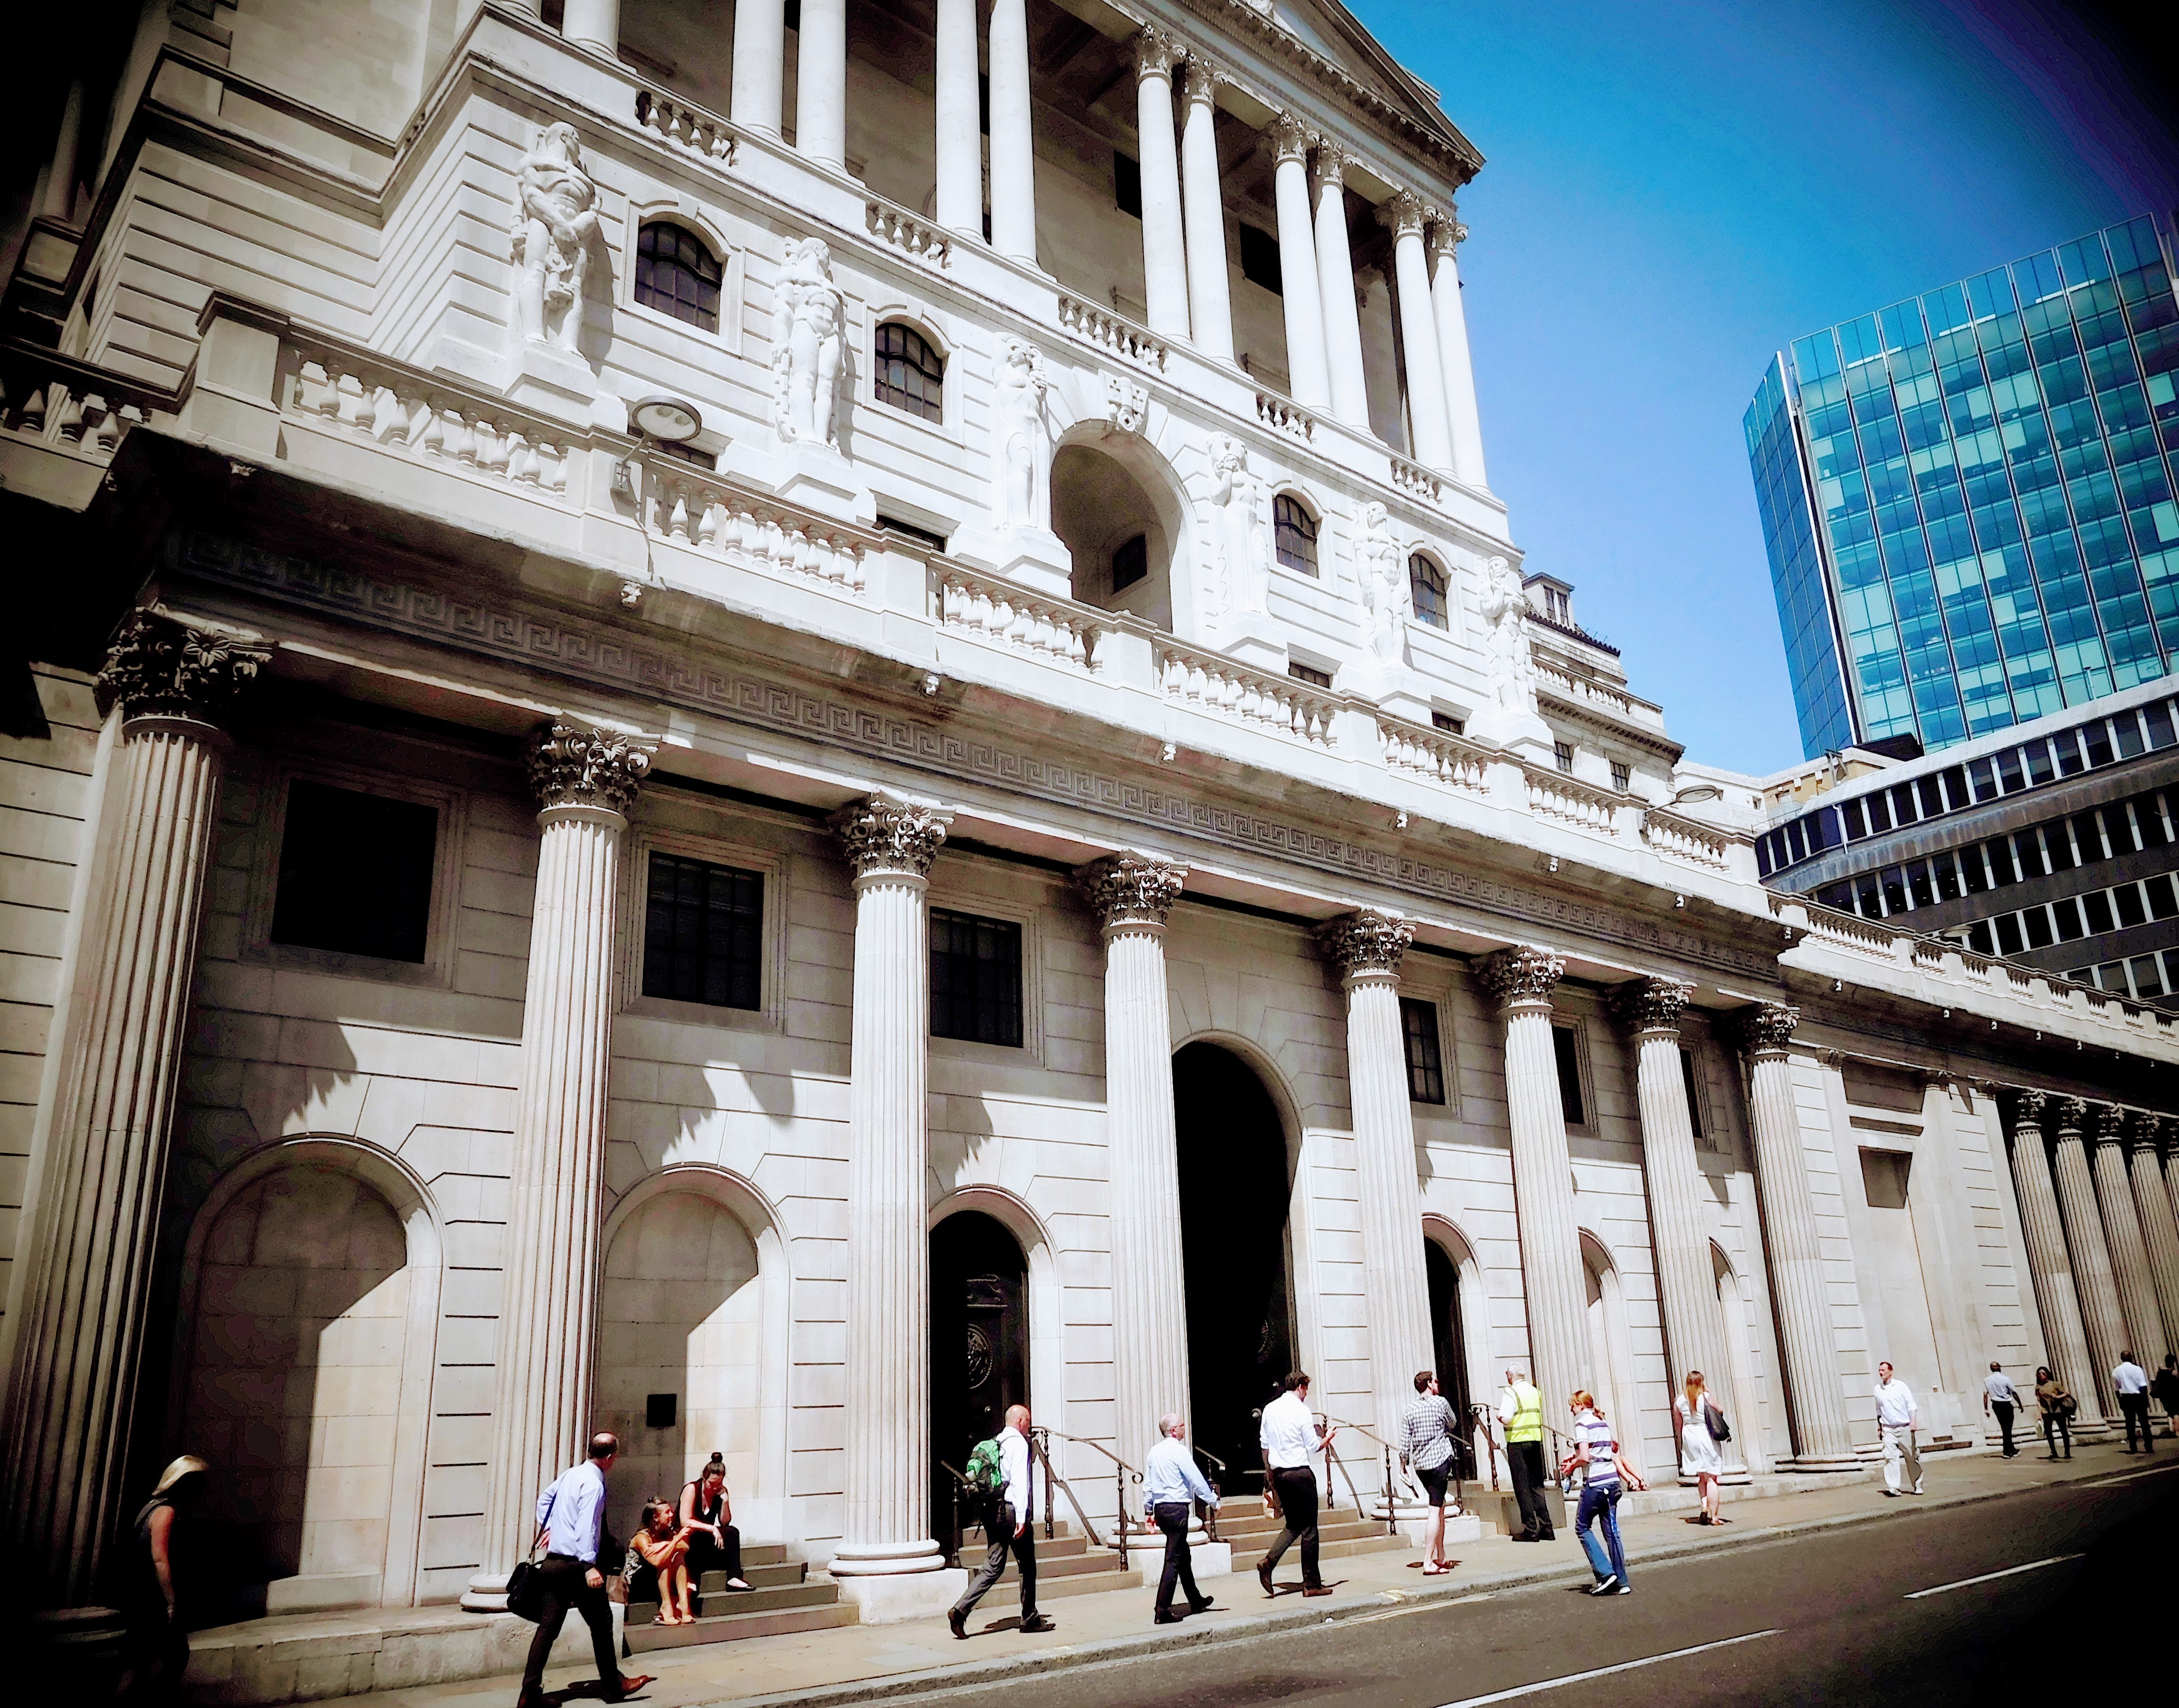 Banco de Inglaterra - Museo del Banco de Inglaterra, Londres